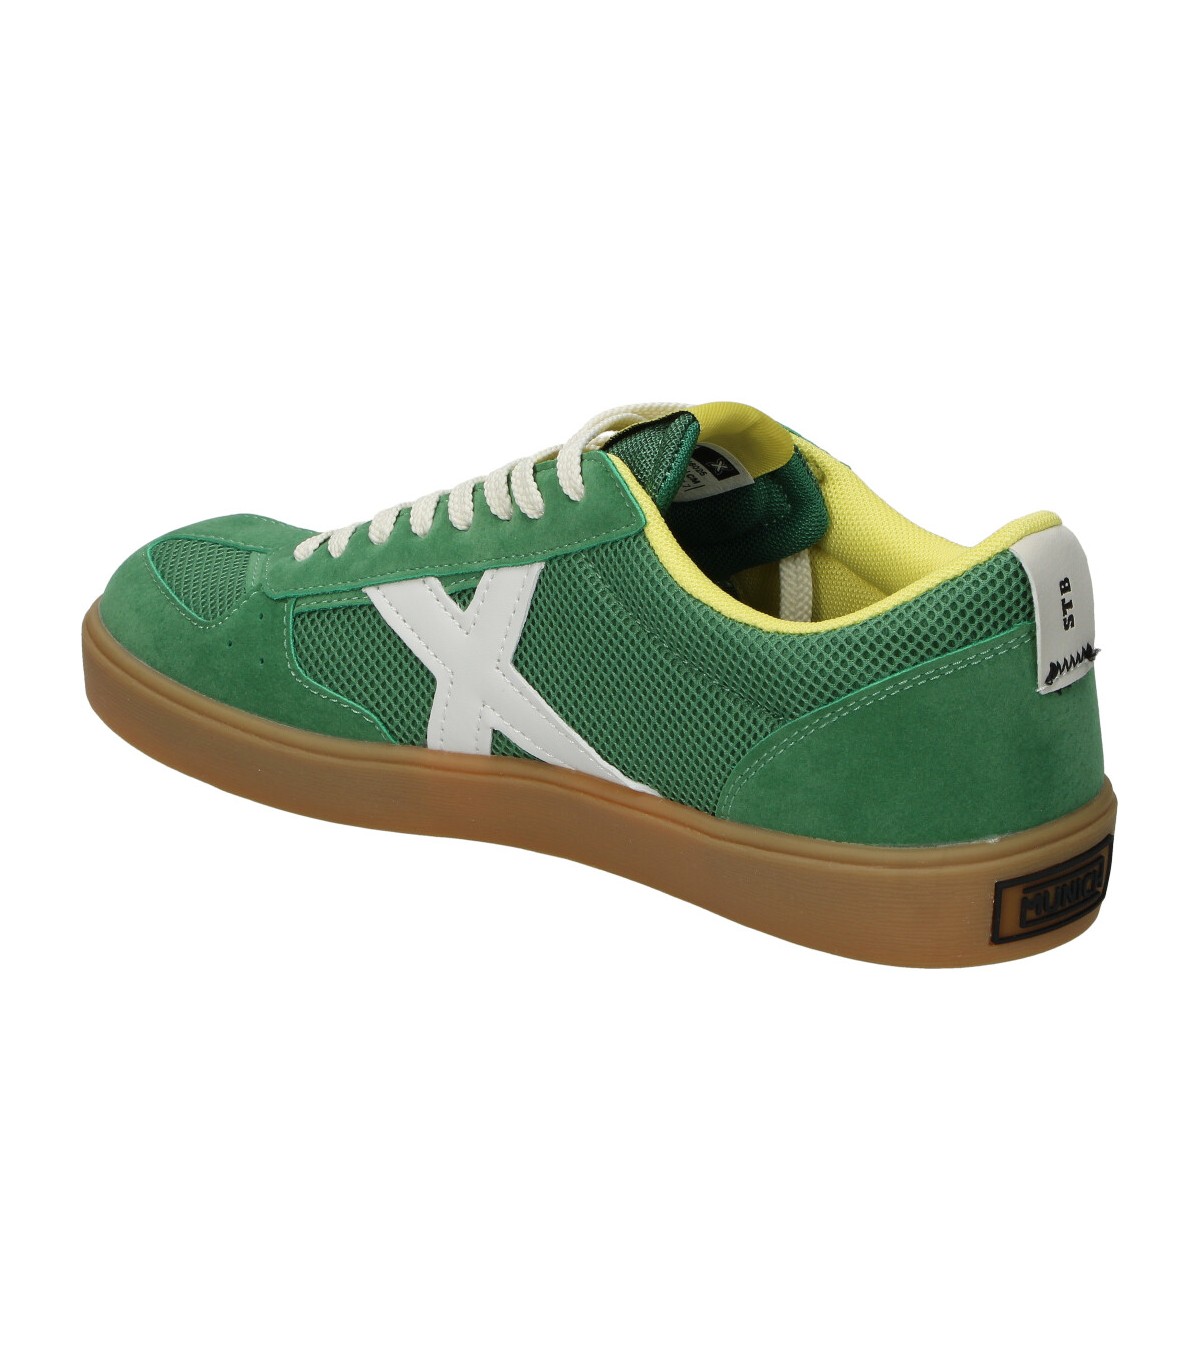 Zapatillas verdes para hombre MUNICH 4150185 online en MEGACALZADO